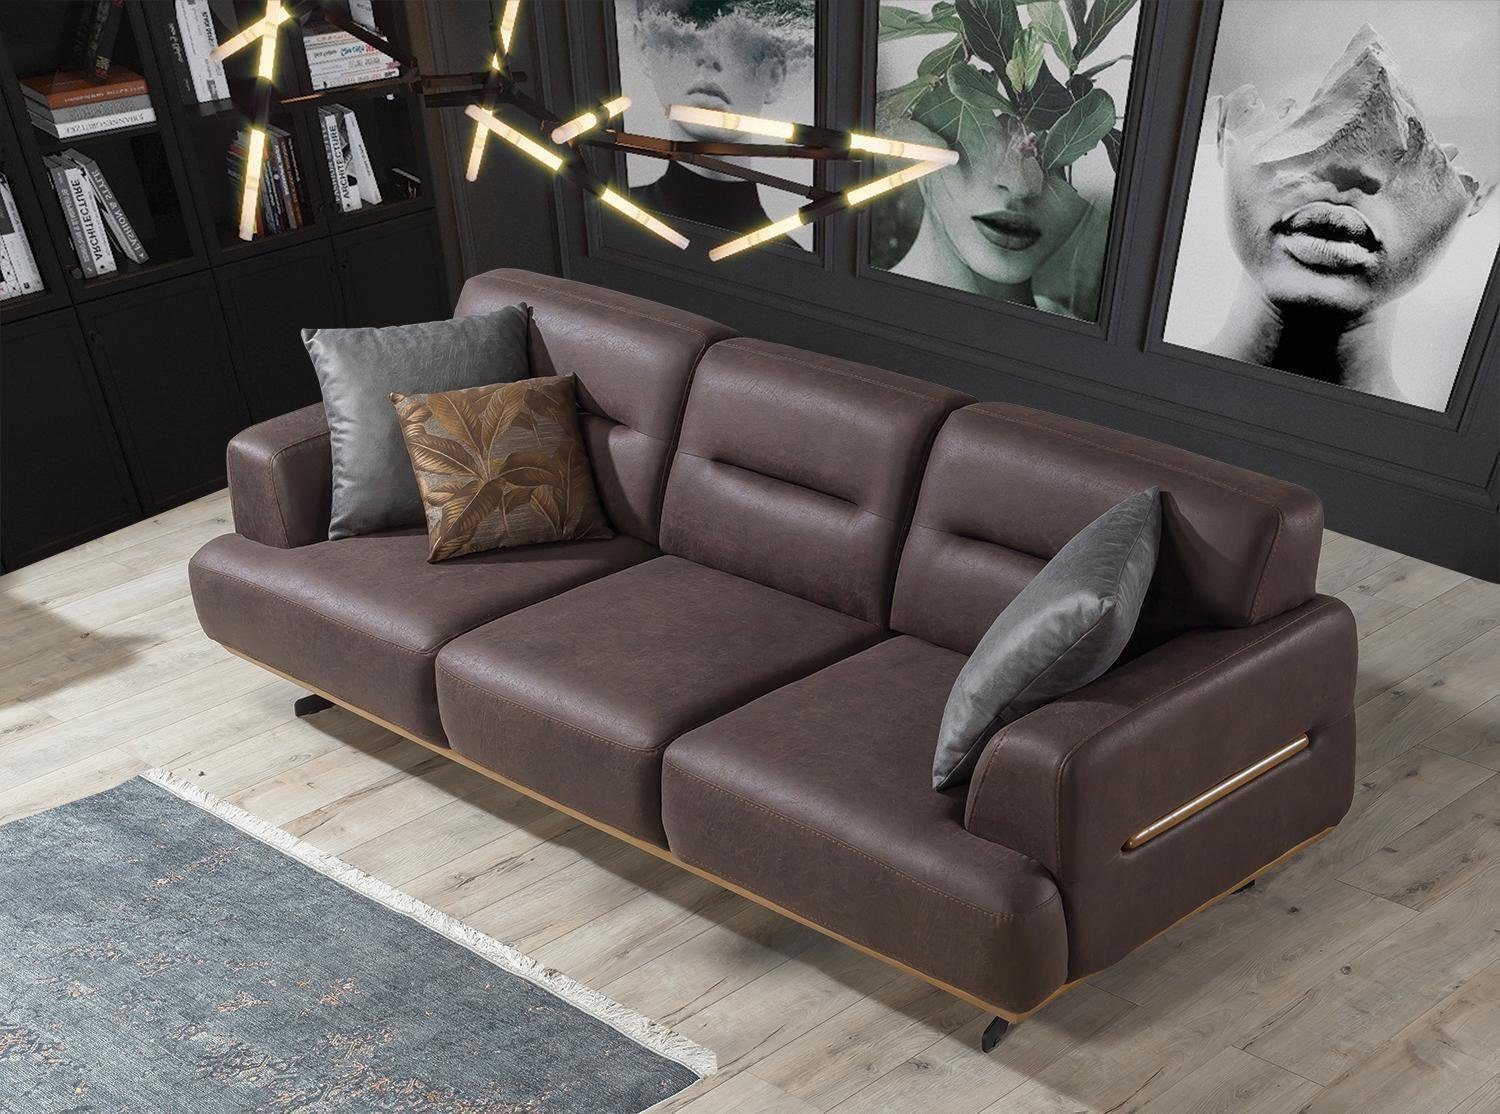 JVmoebel Sofa Braun Sofa Wohnzimmer Couch Dreisitzer Luxus Einrichtung Polster, 1 Teile, Made in Europa | Alle Sofas